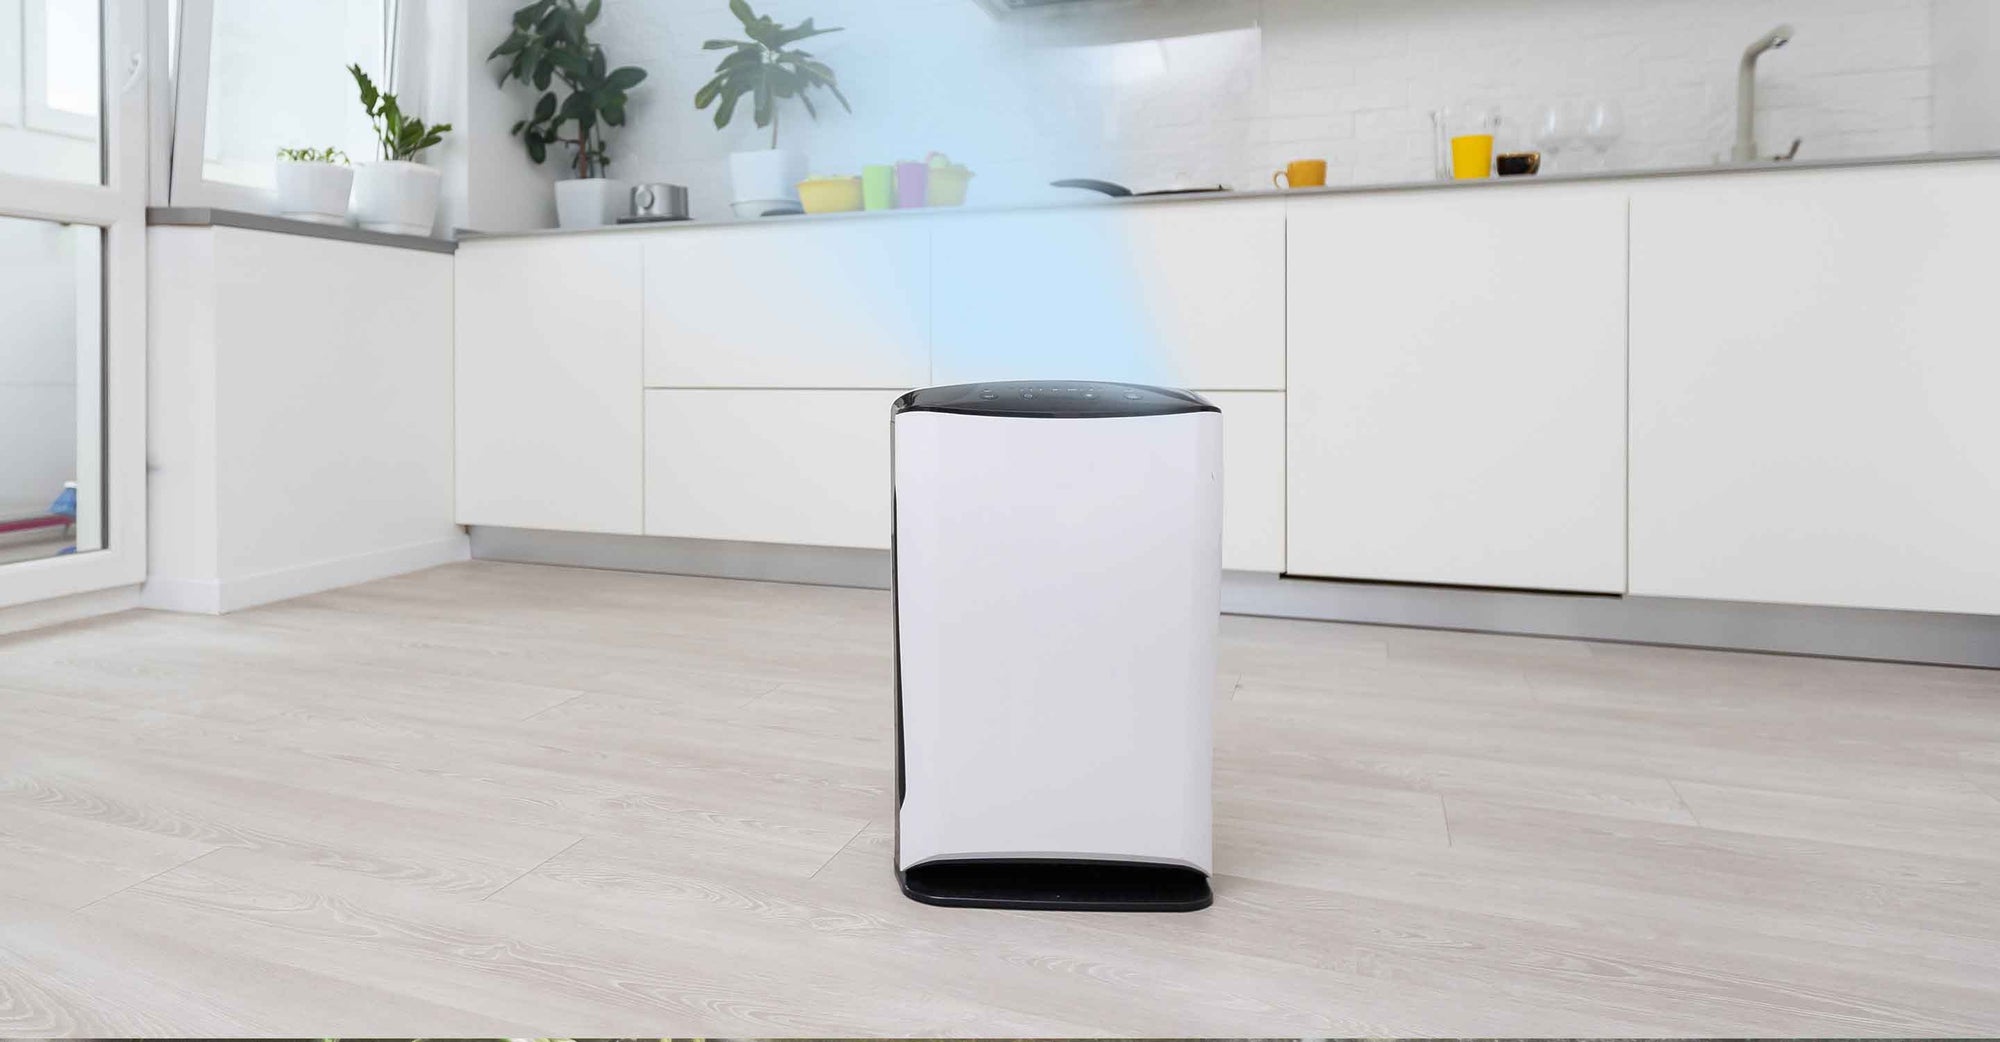 Ionizer air purifier on kitchen floor